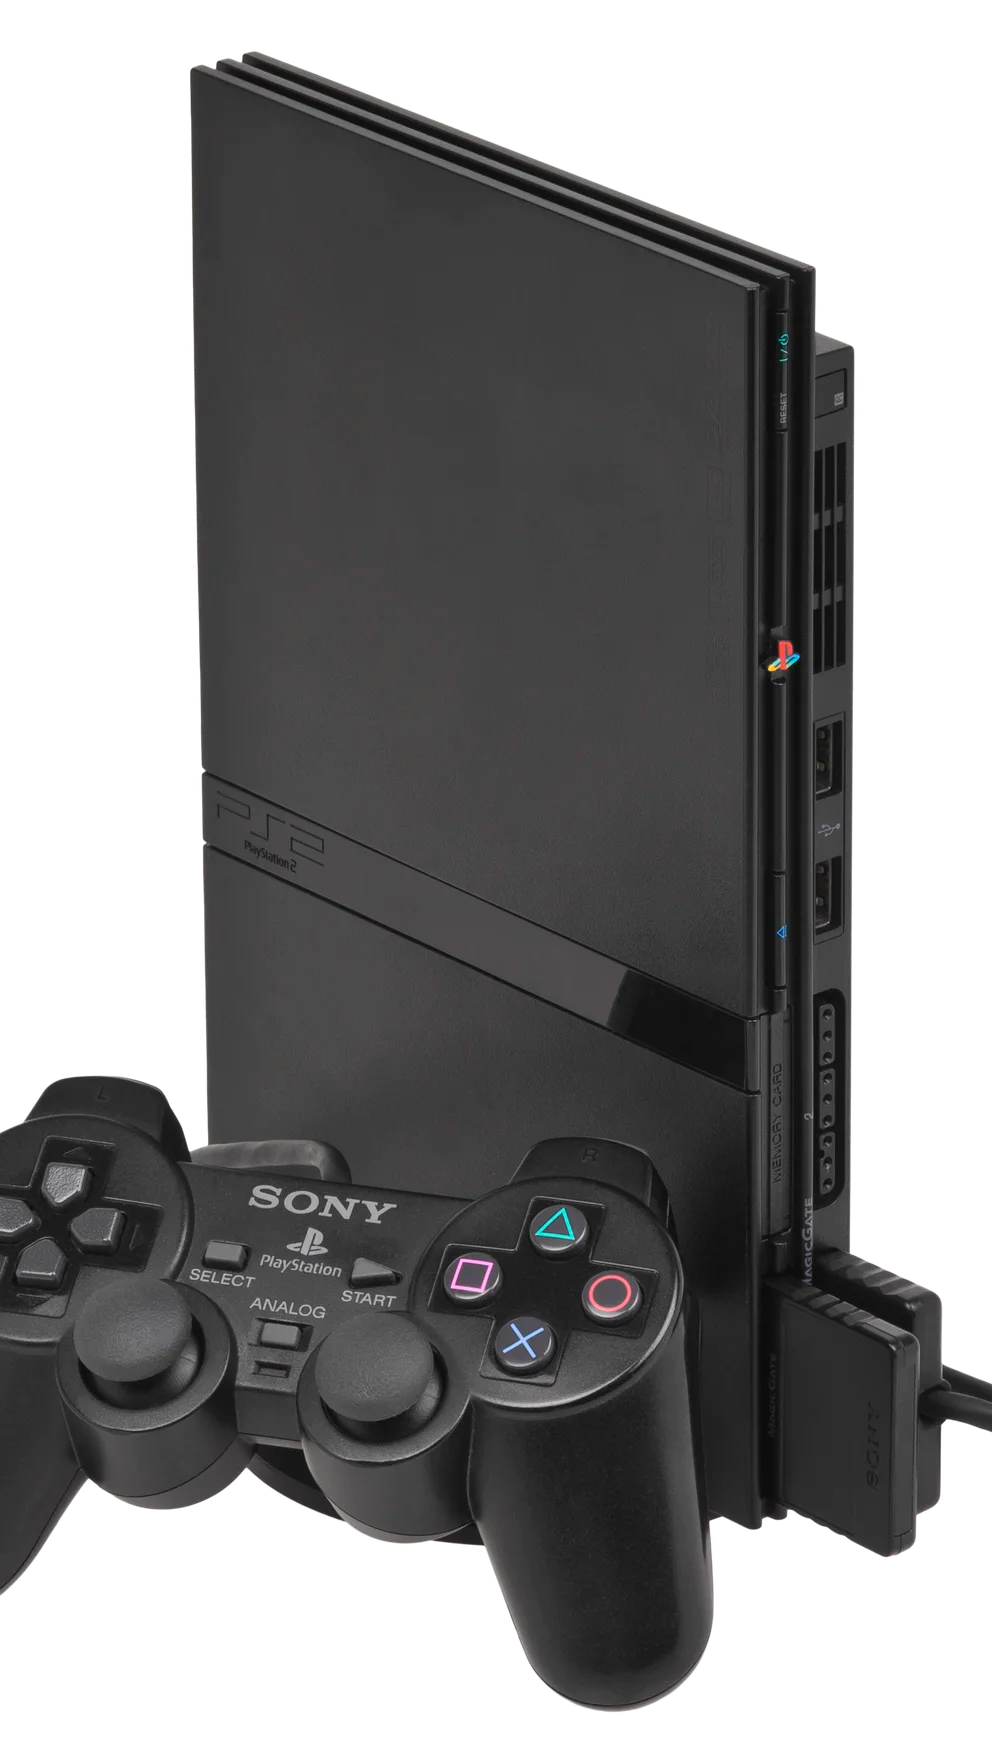 Llegaron dos nuevas versiones de la PlayStation 4 - Infobae